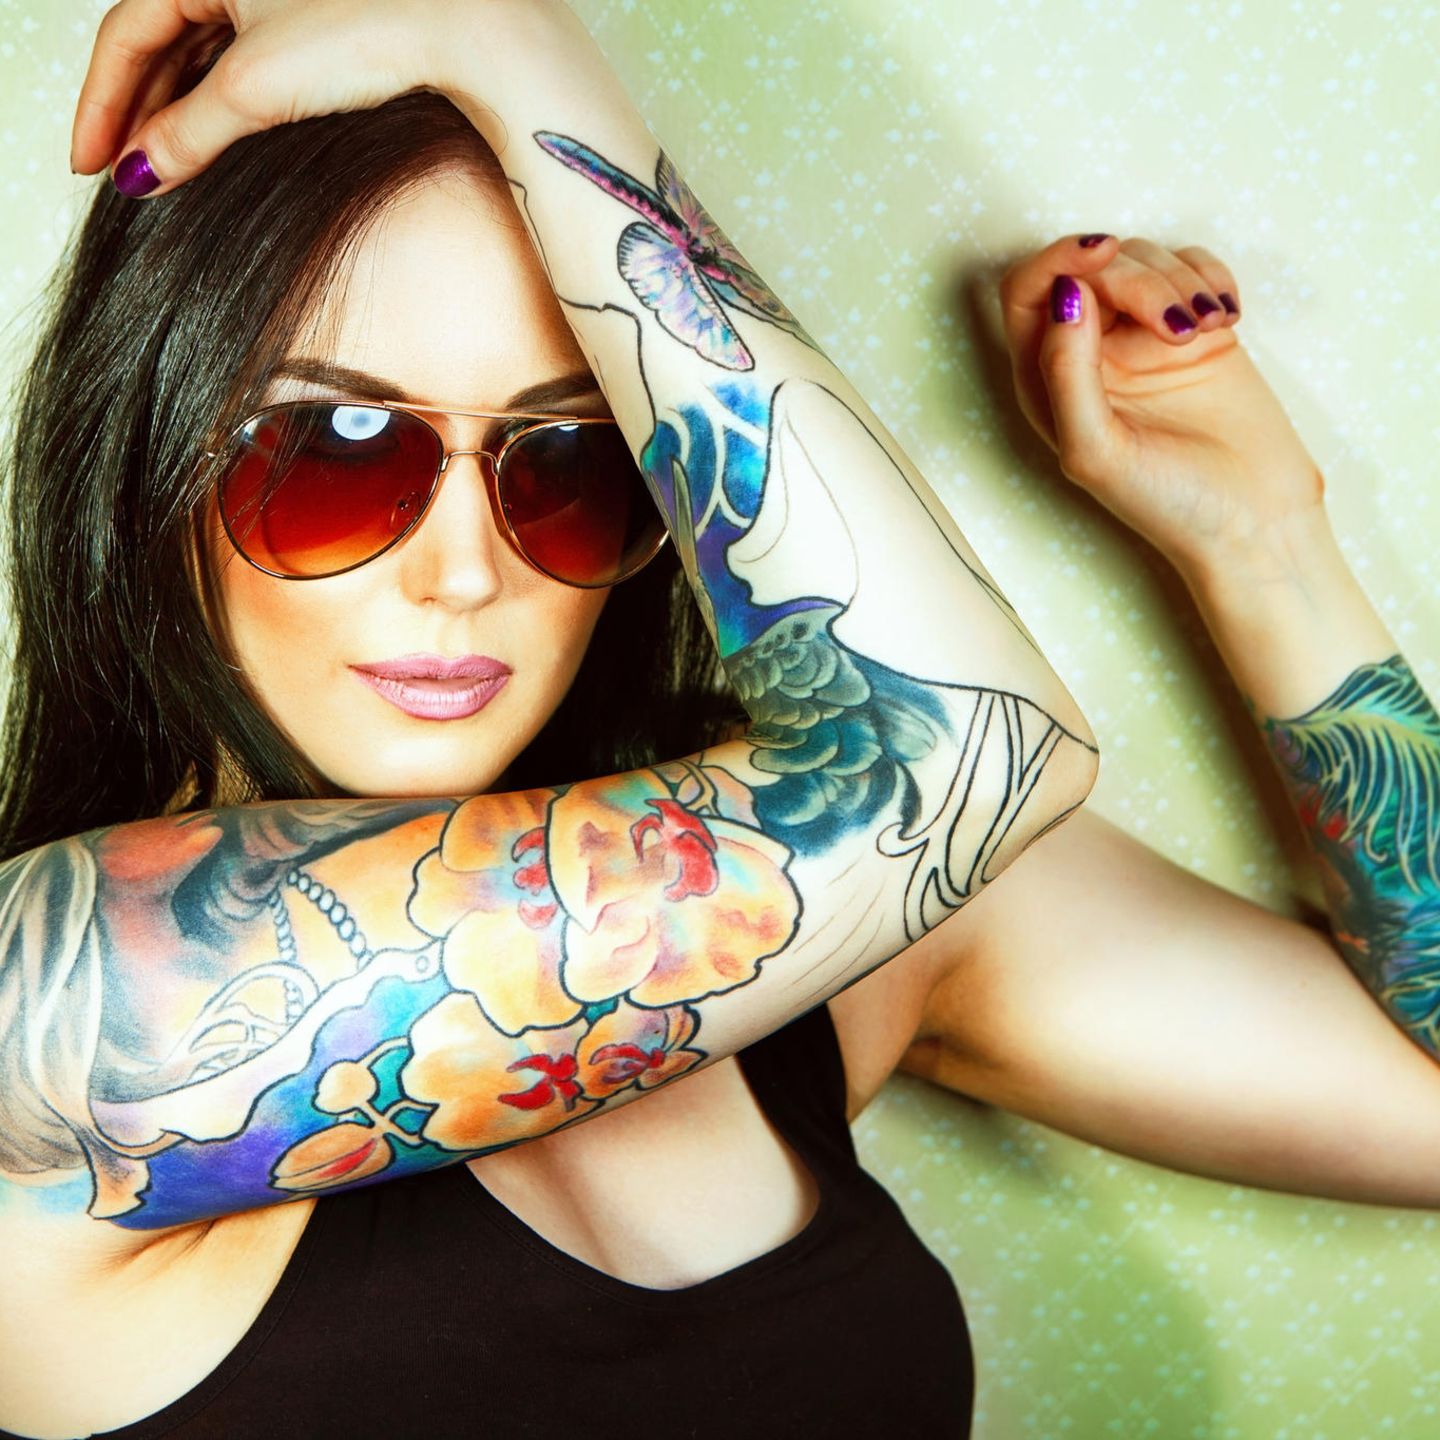 Tattoo am Arm: Farbiges Tattoo am Arm